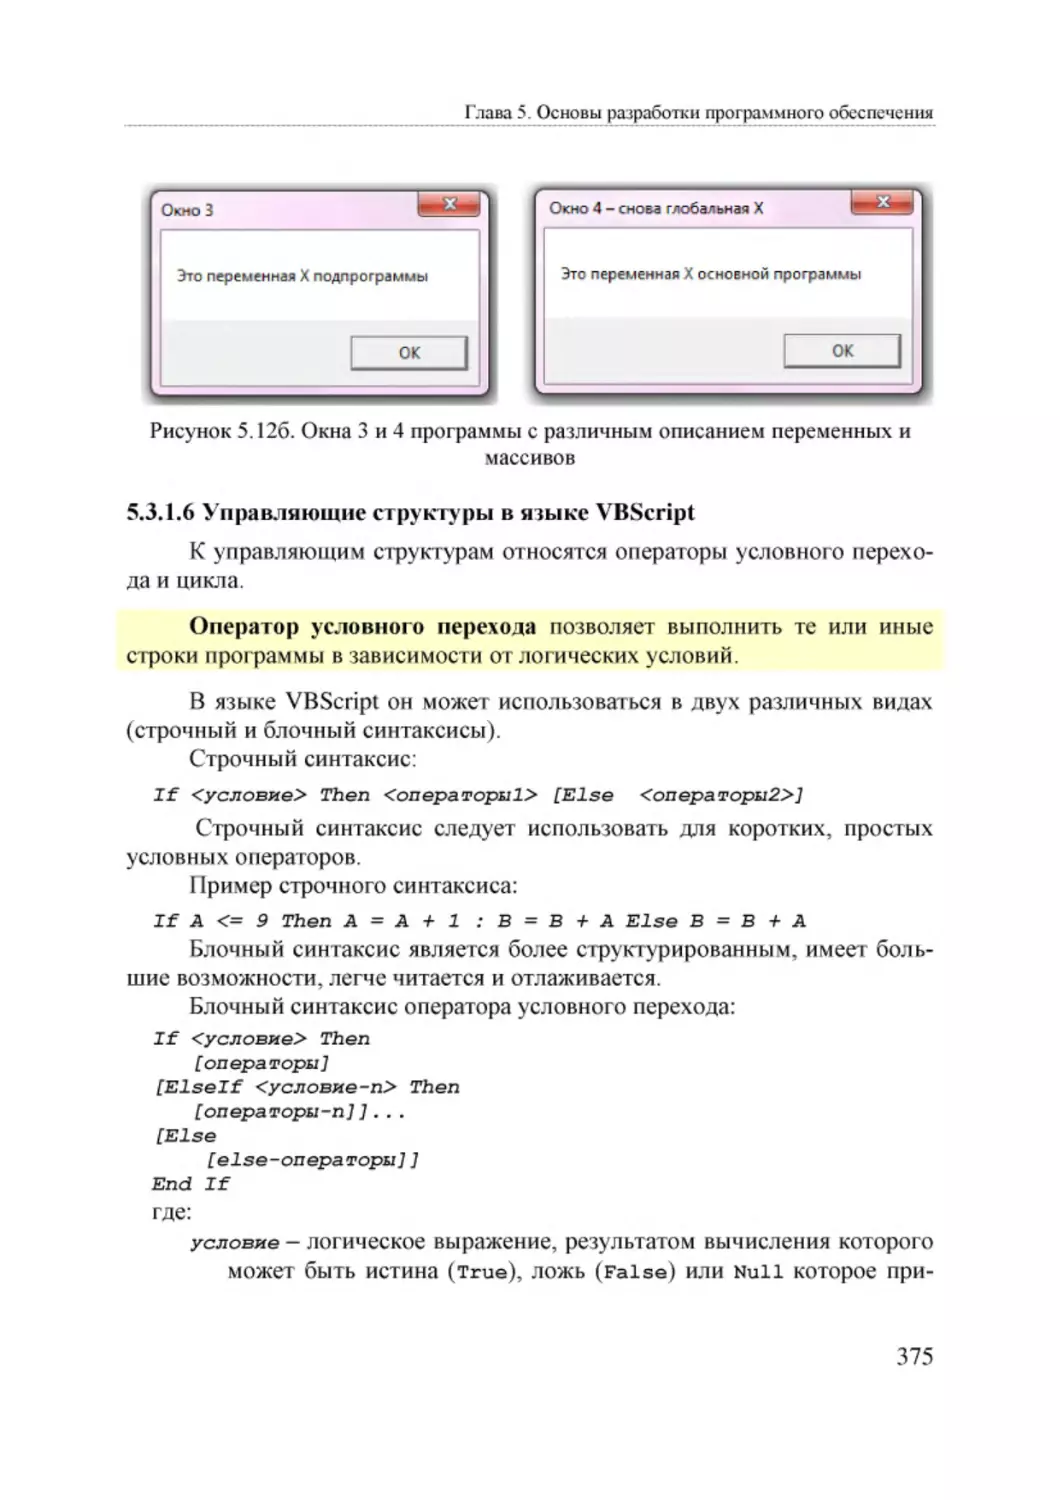 Informatika_Uchebnik_dlya_vuzov_2010 375